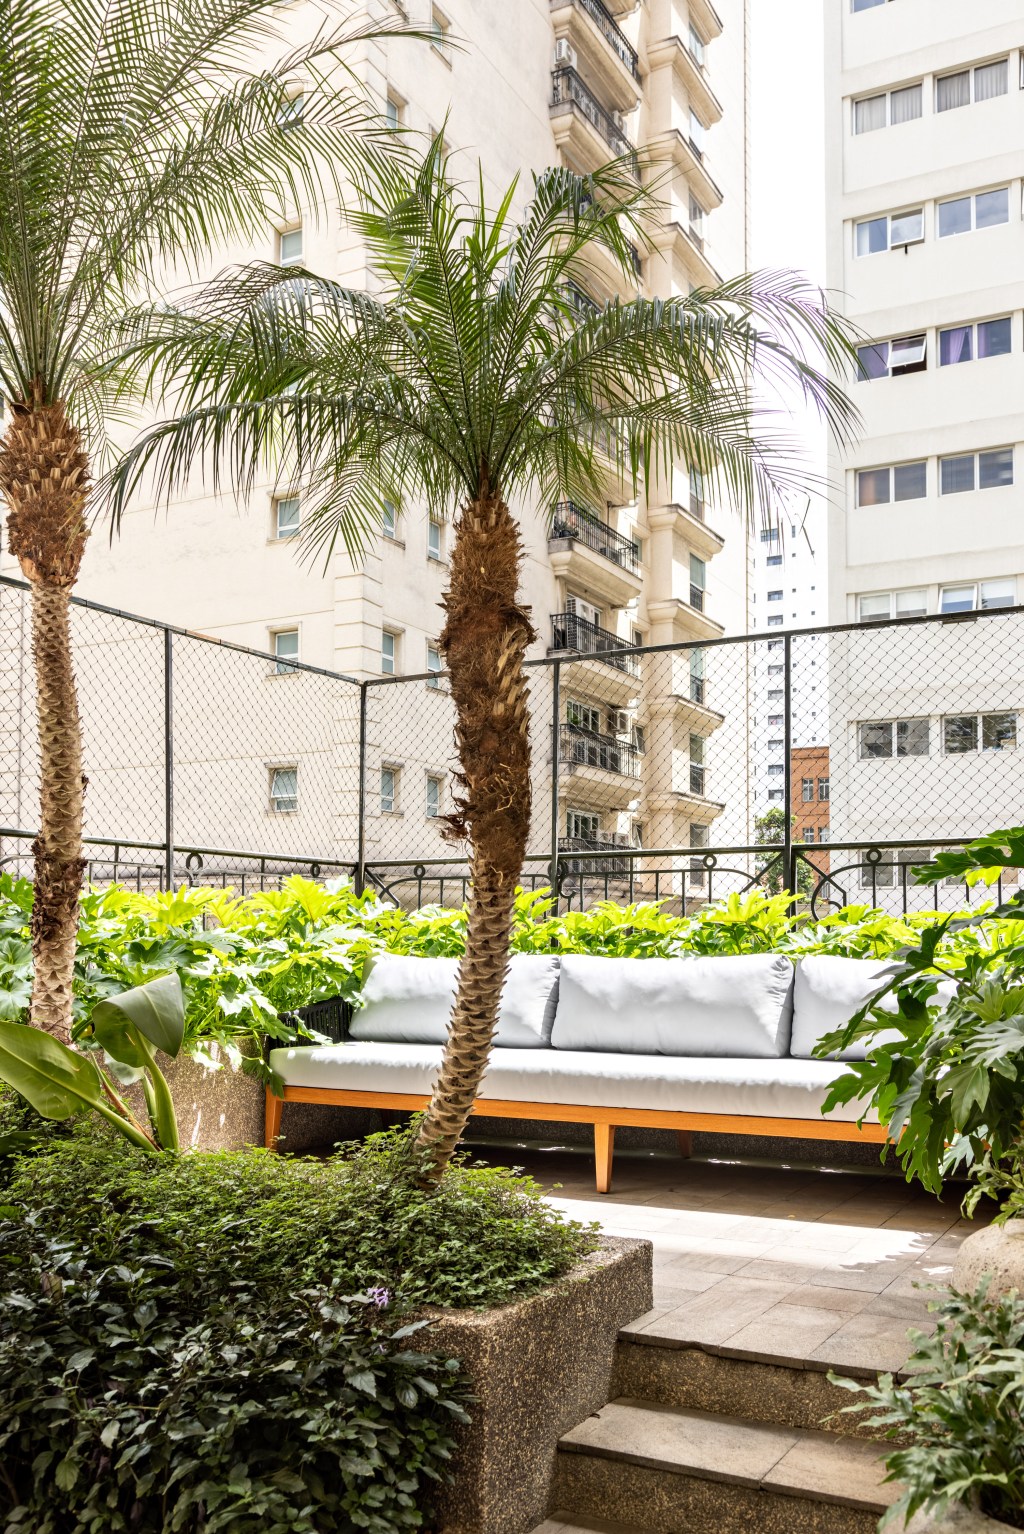 Apartamento de 550 m² ganha espaço para cabine de DJ no living. Projeto de Navarro Arquitetura. Na foto, varanda com banco e plantas.